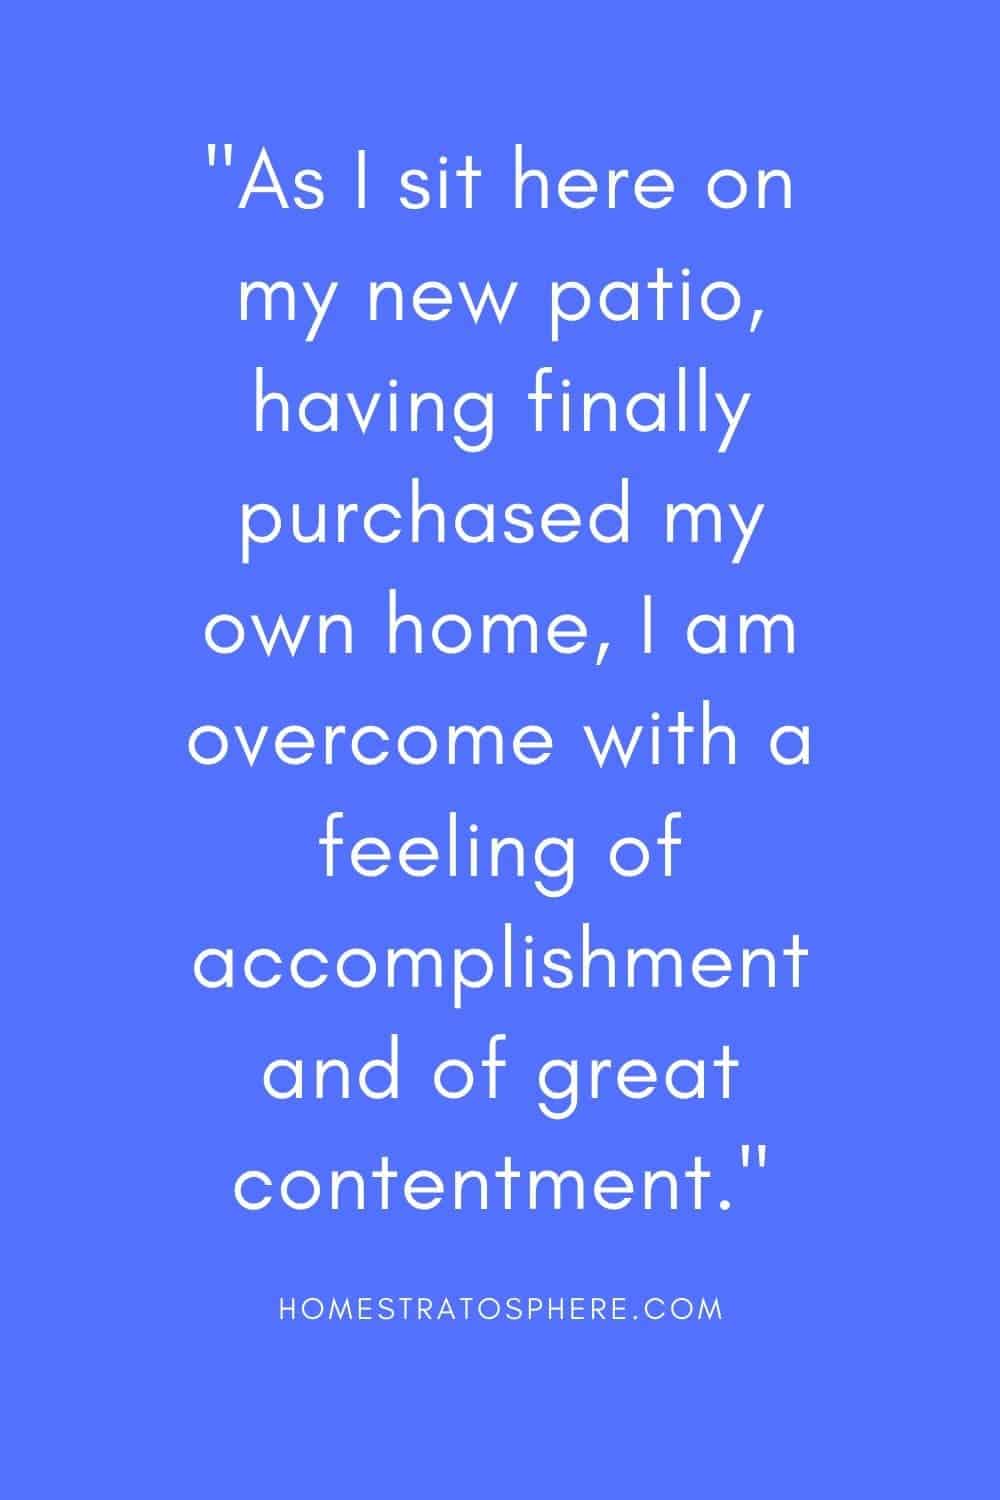 “当我坐在我的新院子里，终于买了自己的房子，我充满了成就感和极大的满足感。”